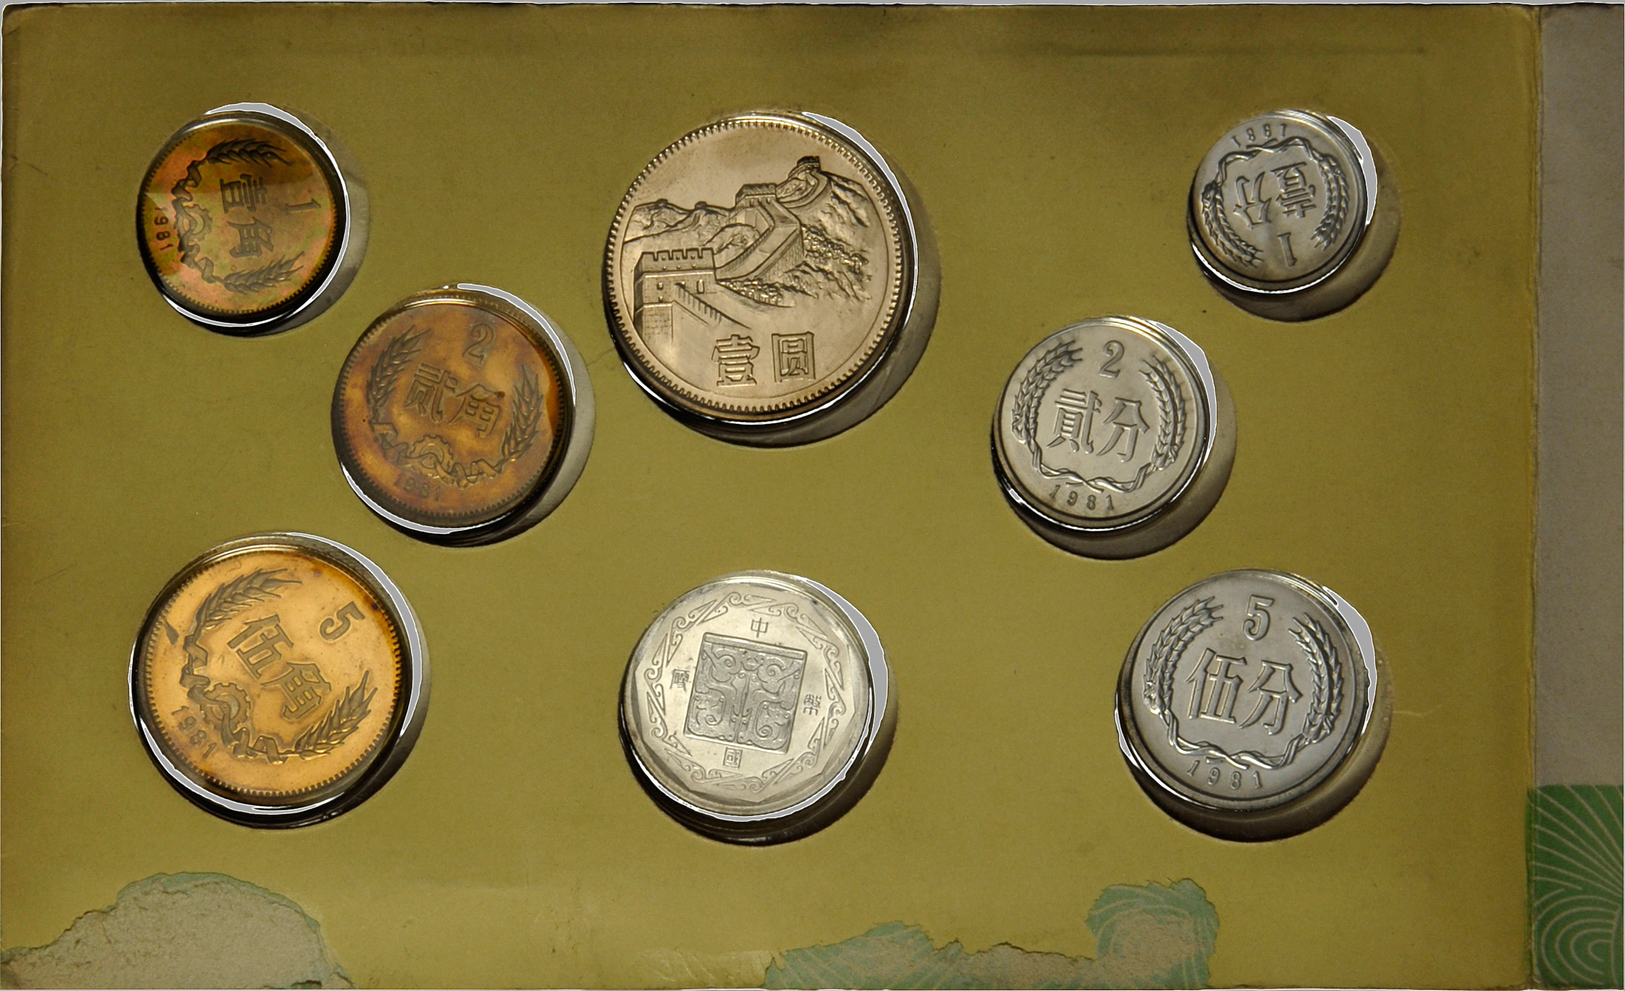 05027 China: Kursmünzensatz 1981 PP, 7 Münzen KM 1-3, 15-18 Plus Medaille Ratte Im Folder Der Shanghai Mint (Folder Besc - Chine